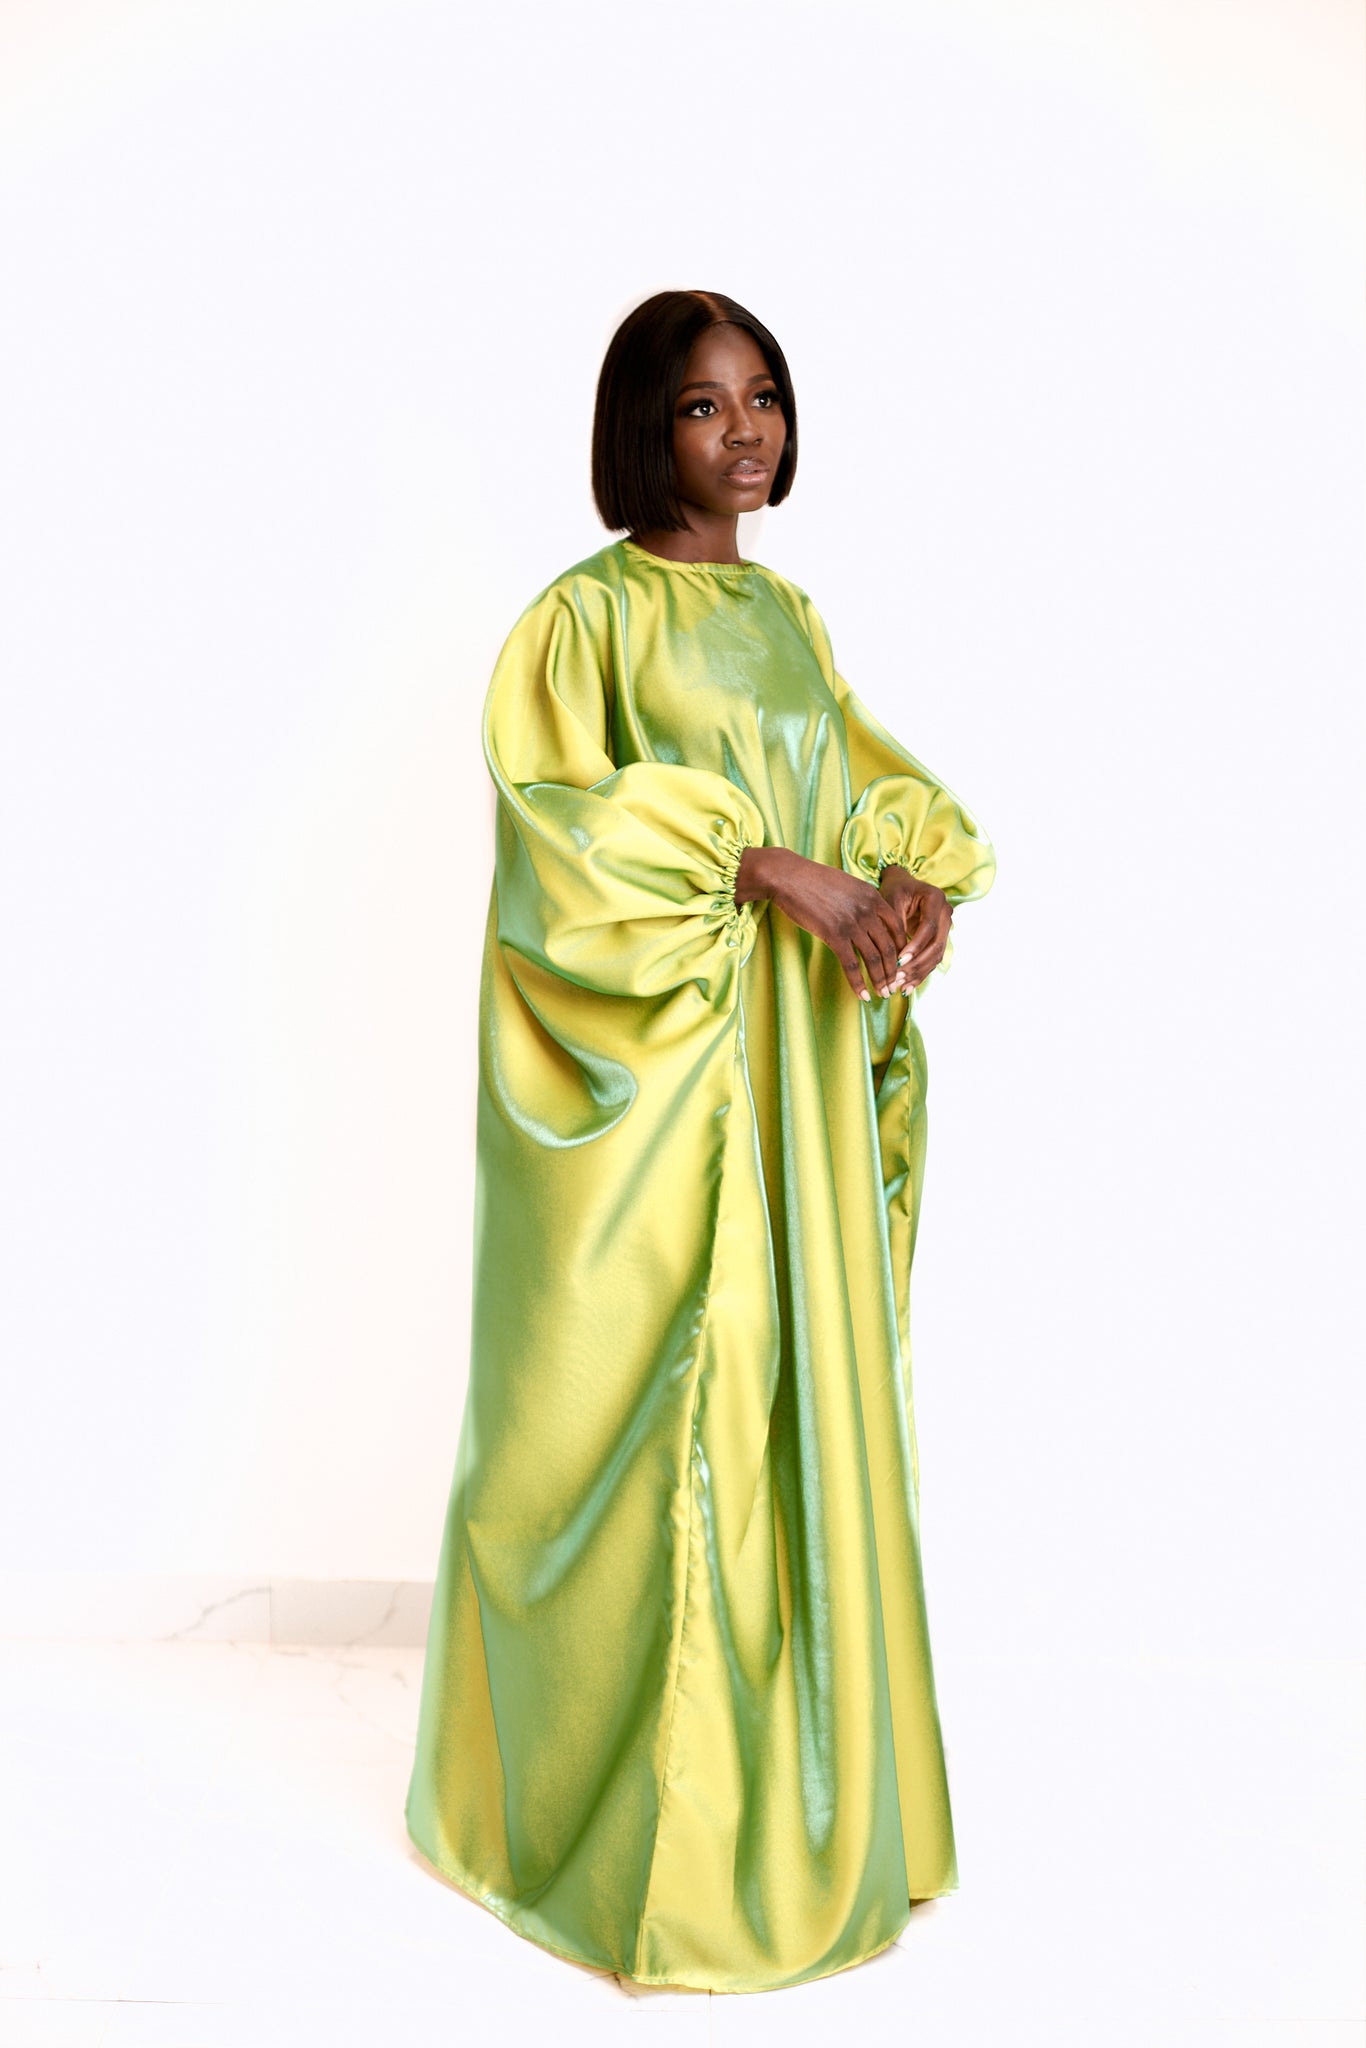 Diva dress in Lime Green